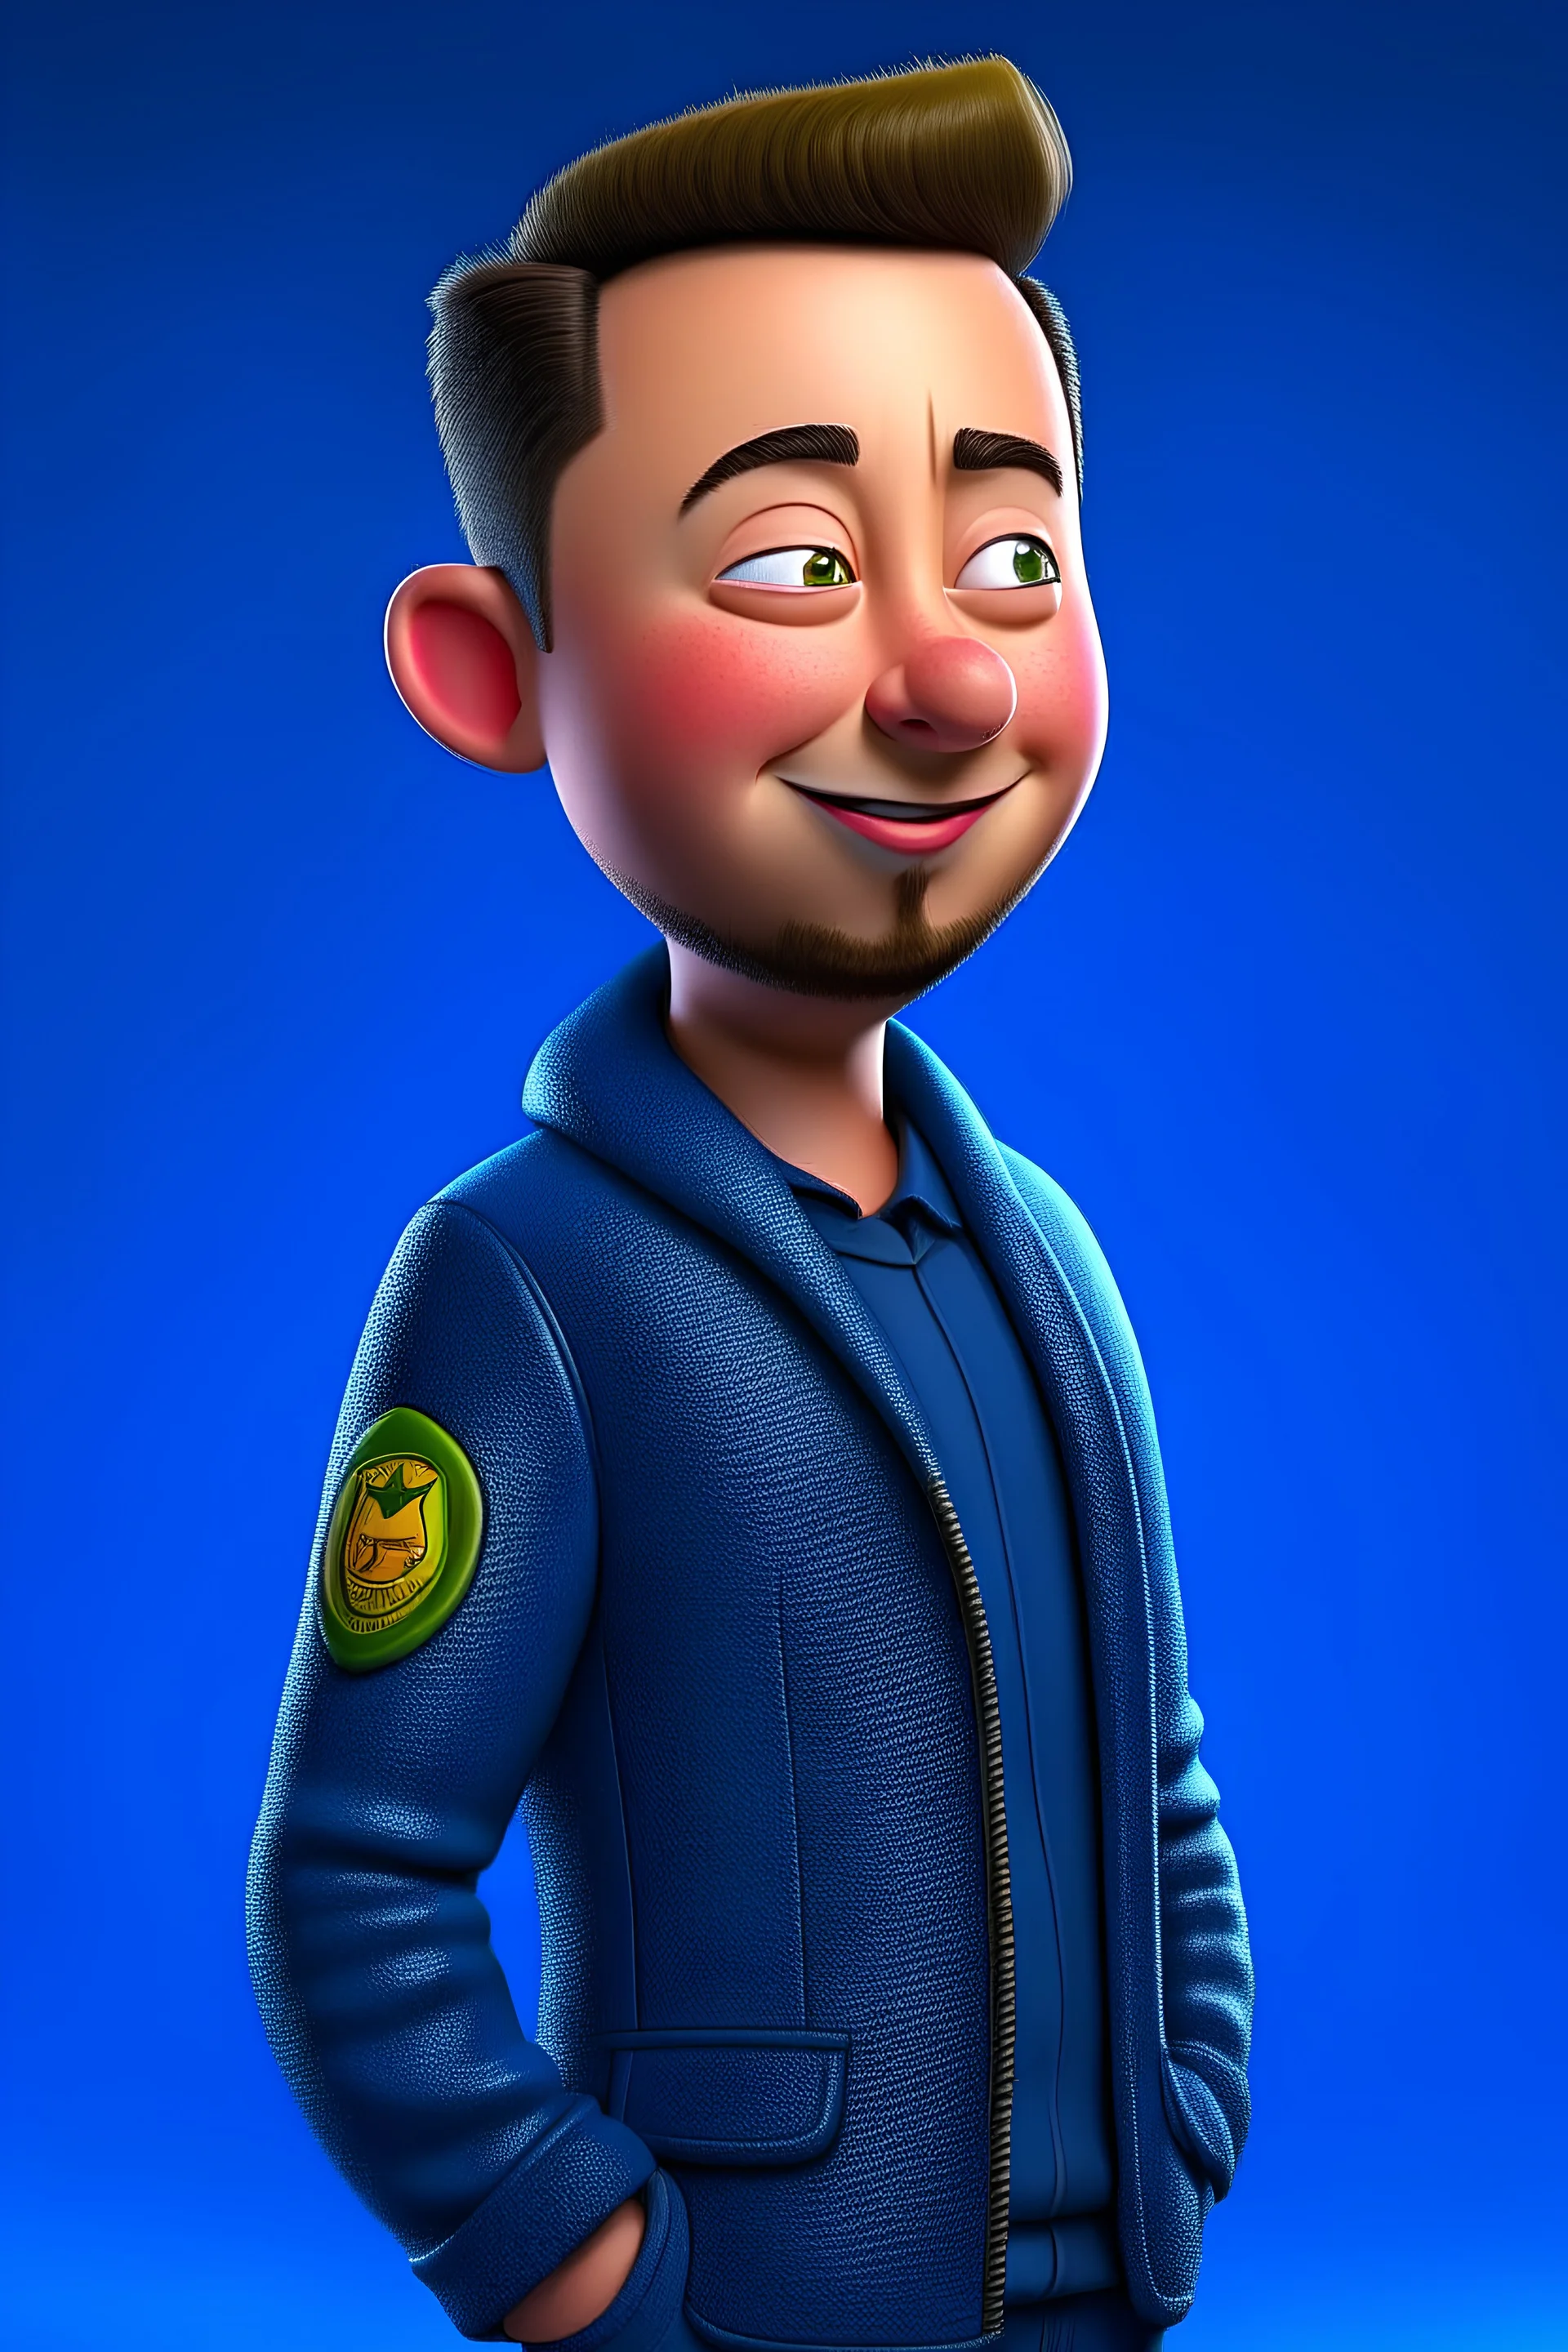 Elon Musk in playtoon style, Pixar render